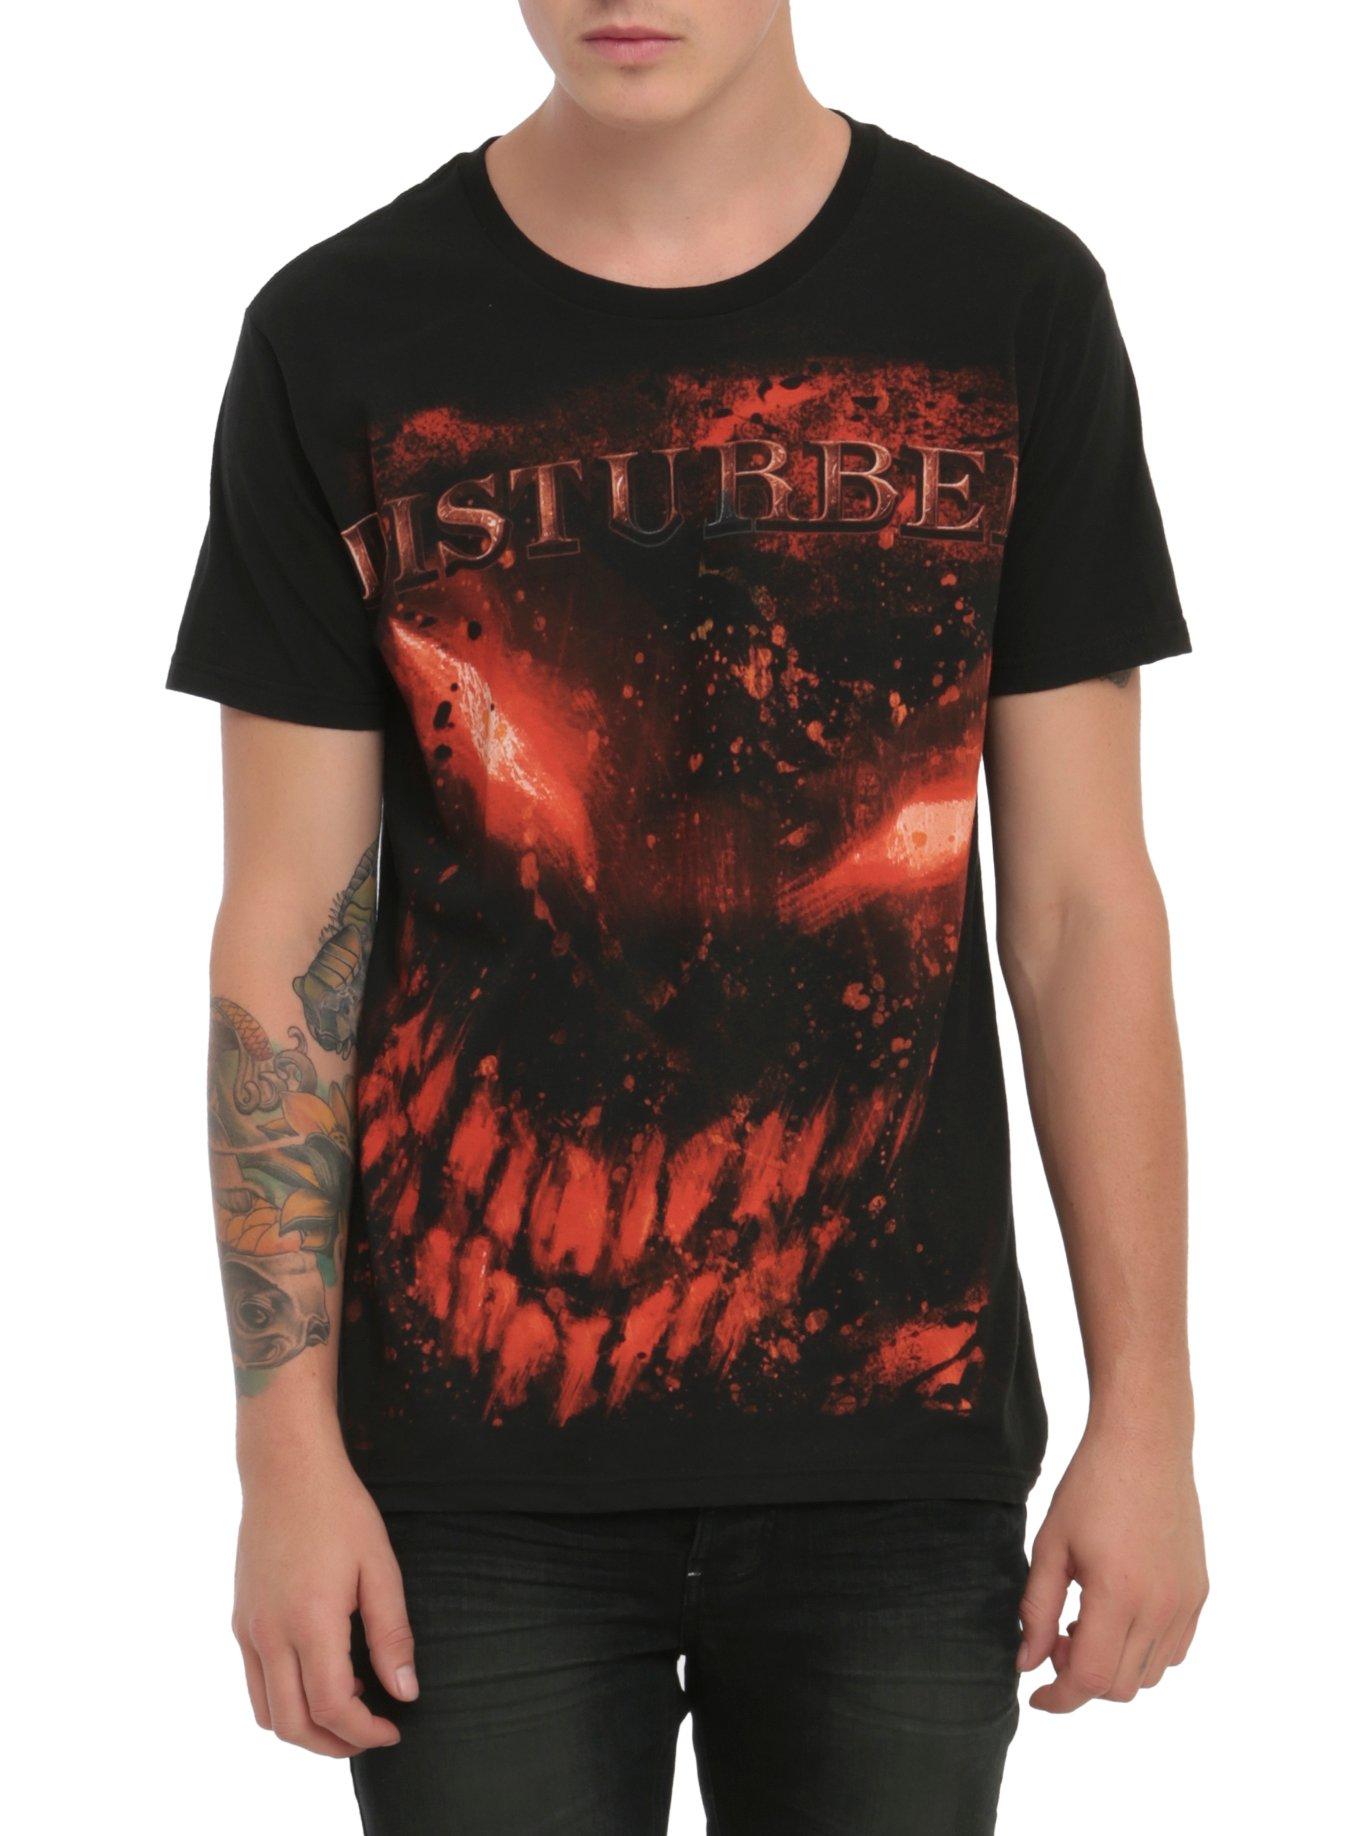 Disturbed Splatter Face T-Shirt, BLACK, hi-res